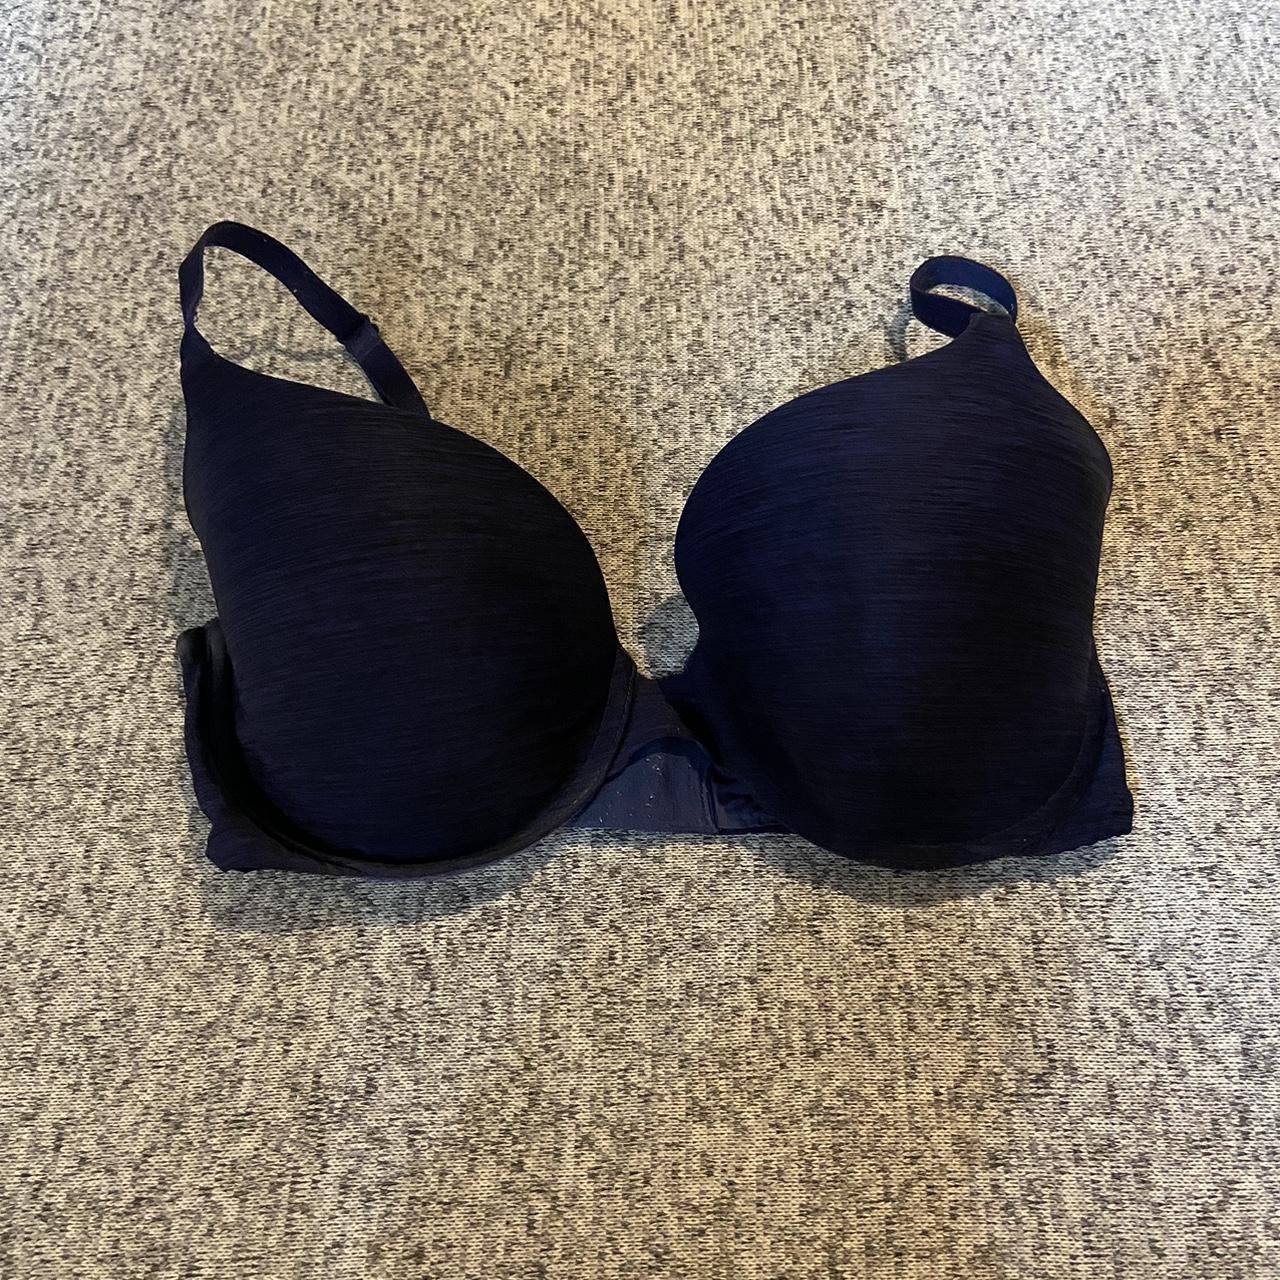 Women's Victoria's Secret Bra! Size 36DD. Used, not - Depop